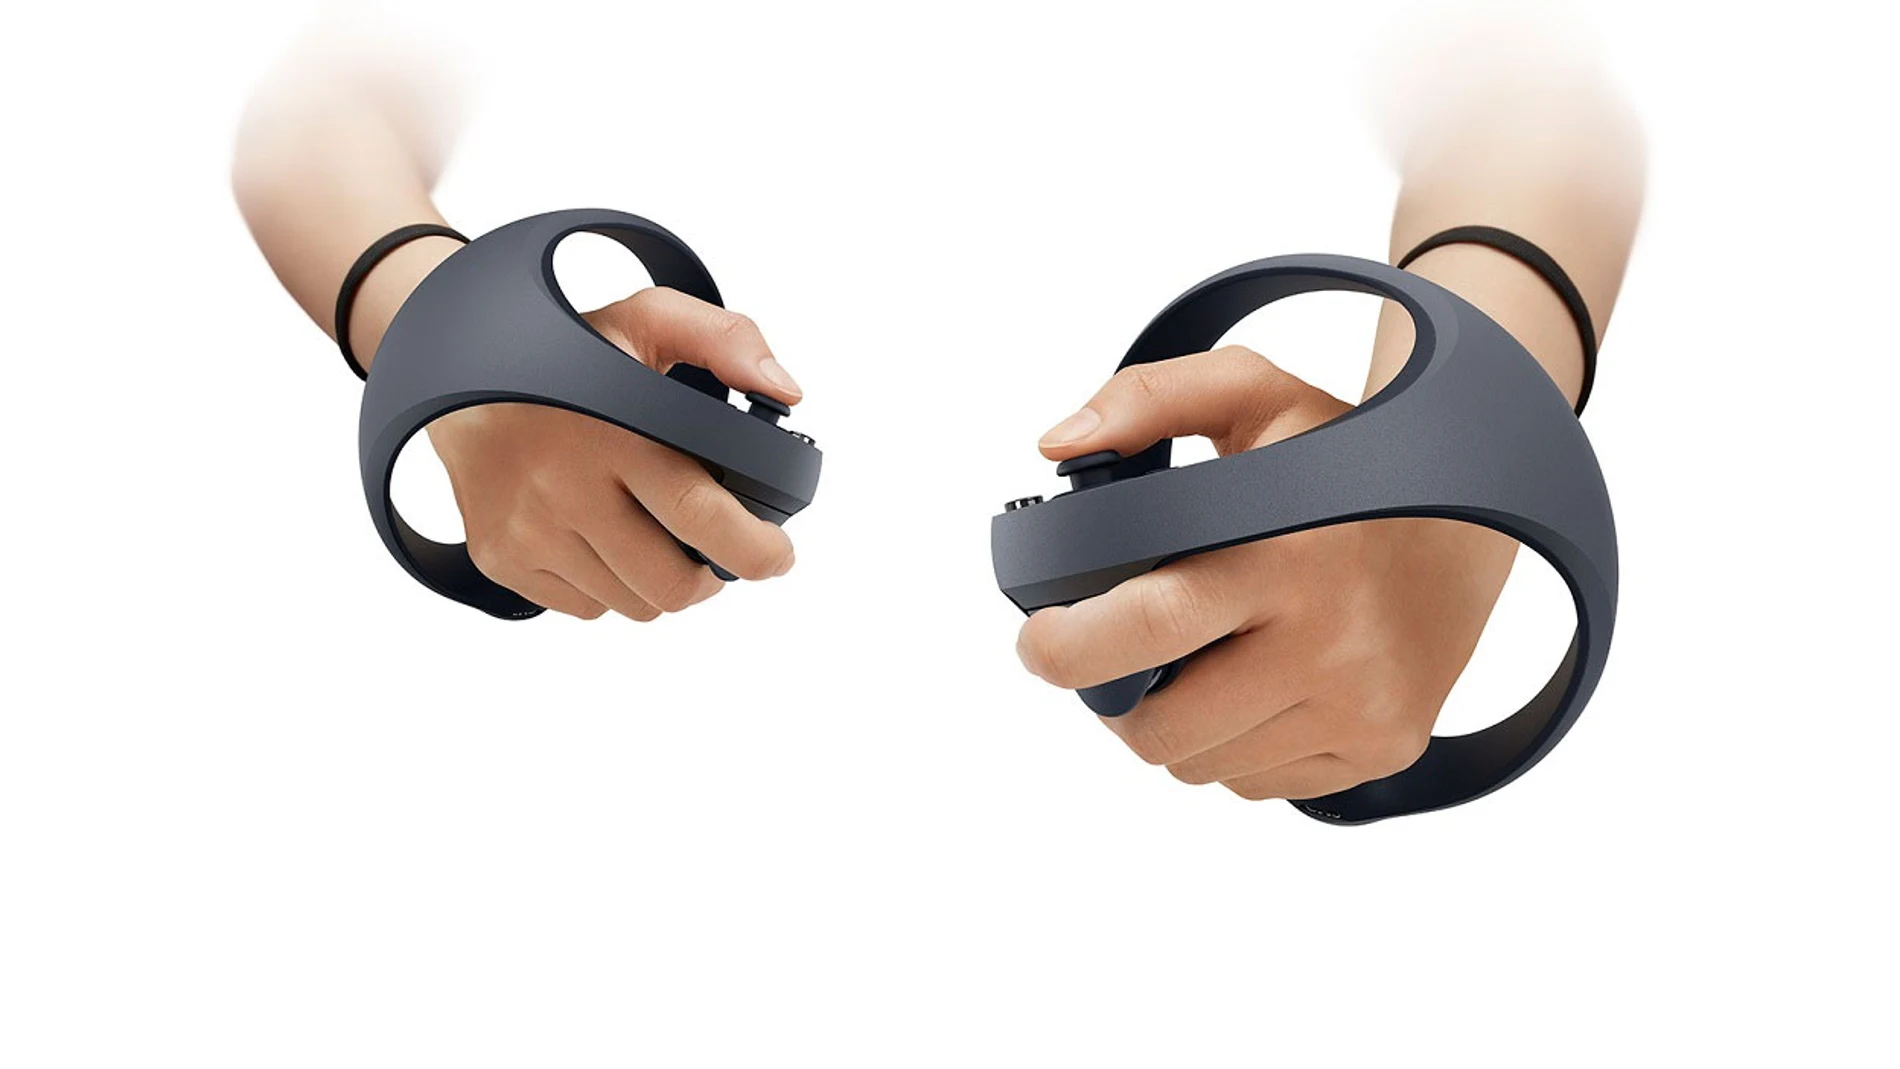 El controlador PlayStation VR2 Sense es todo lo que Sony ha mostrado hasta ahora de la próxima generación de dispositivos de realidad virtual para PlayStation.